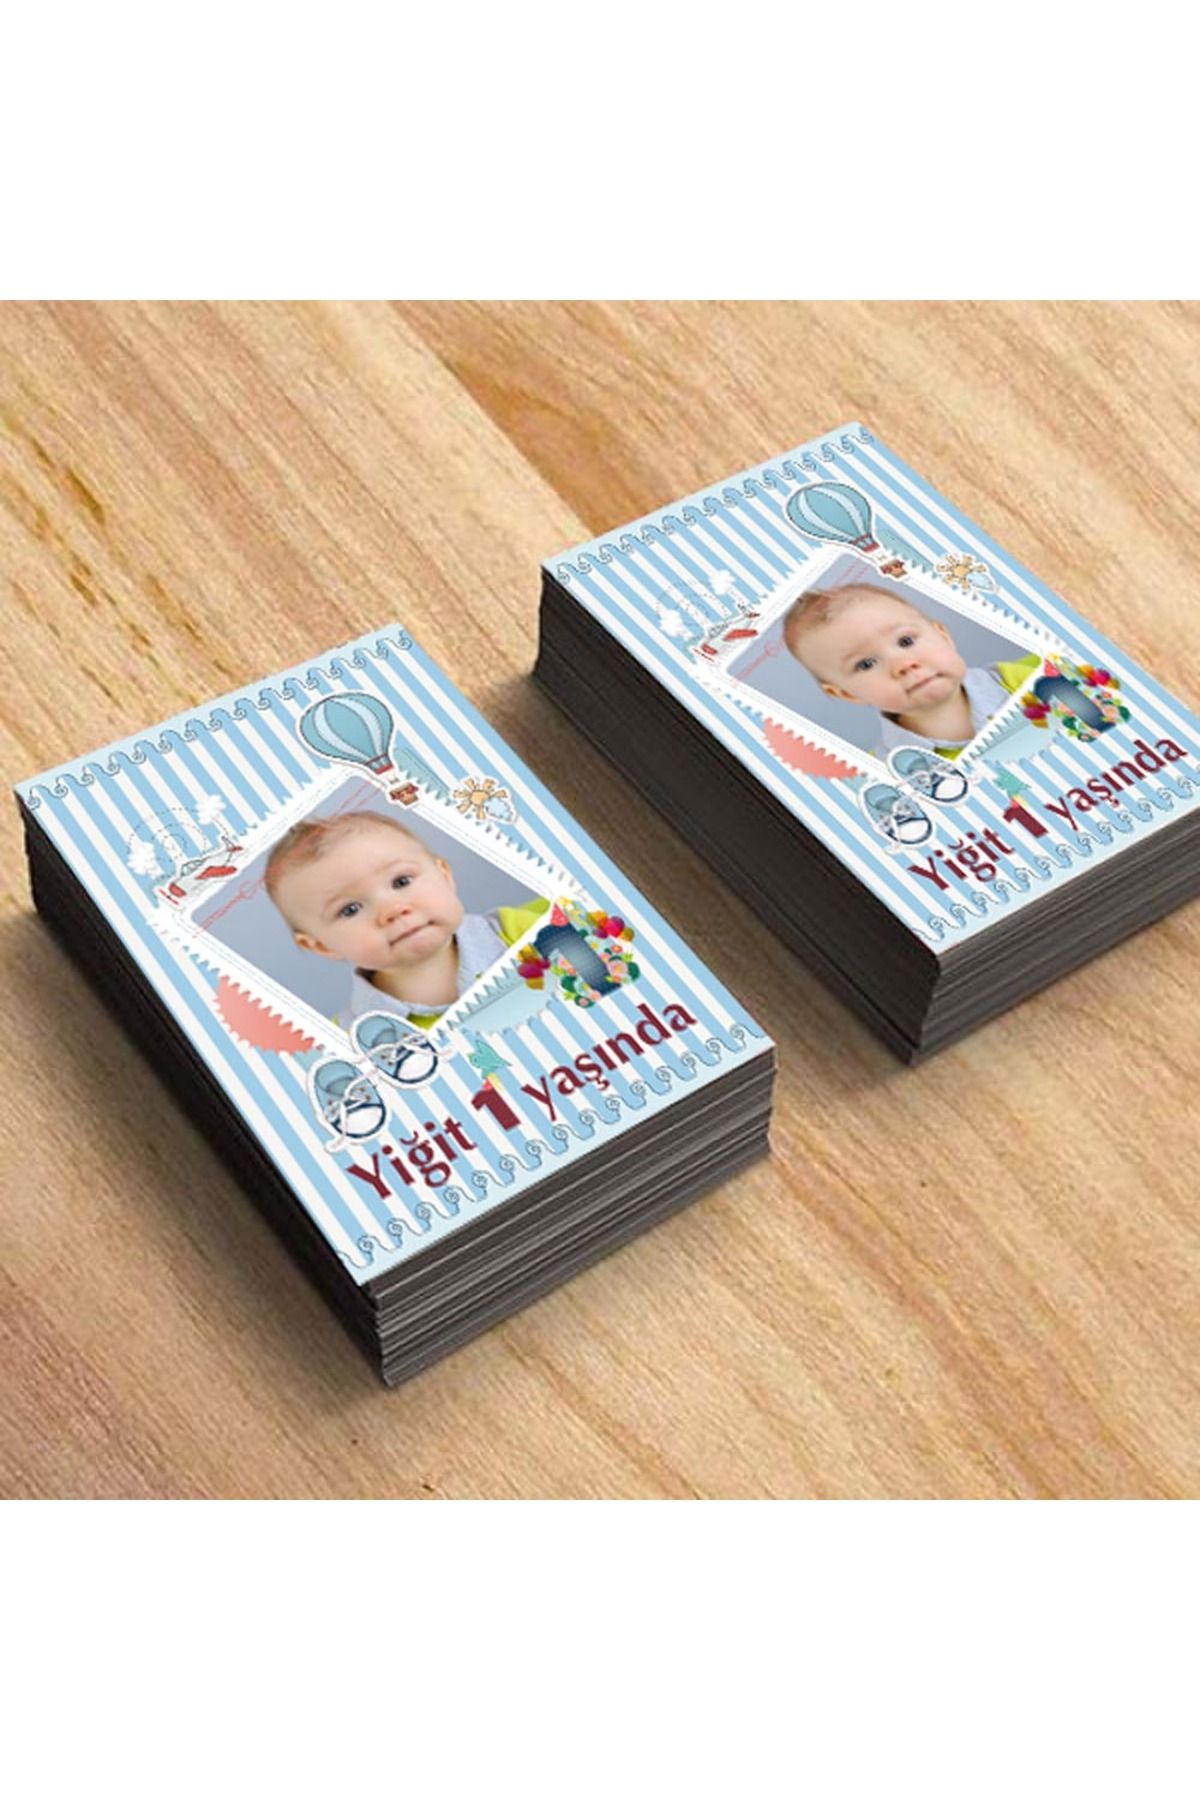 partimira 1 Yaş Doğum Günü Magneti Bebek Magnetleri Resimli Bebek Magnet 9 Adet 7x5 cm